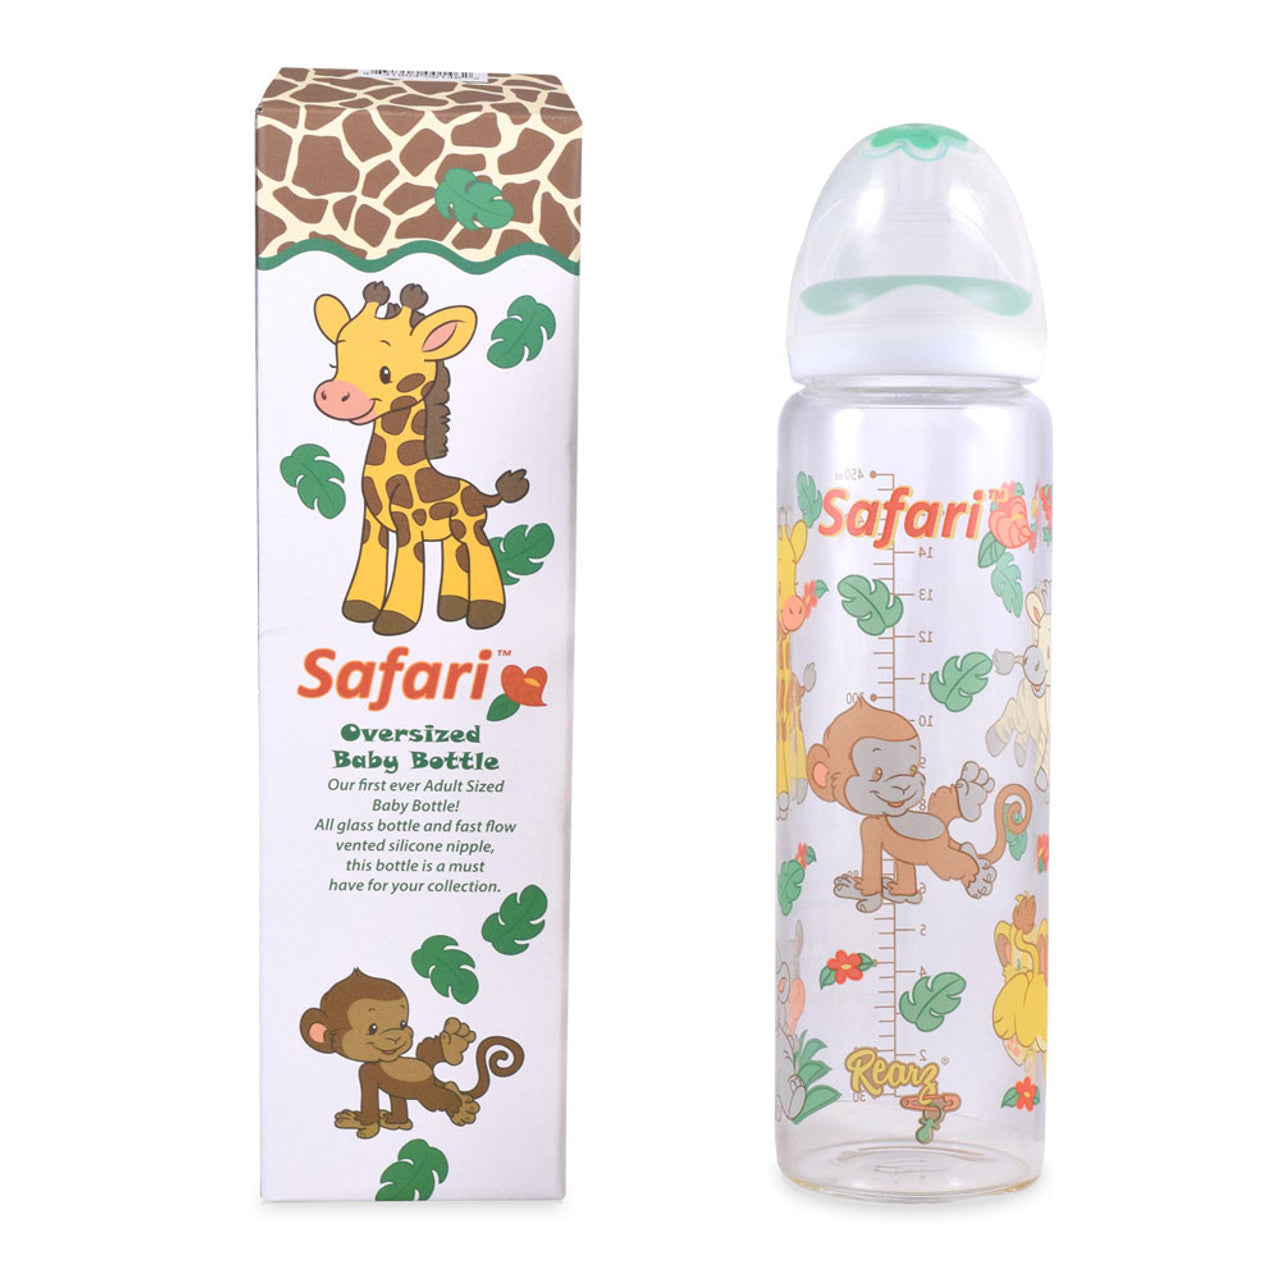 Rearz - Adult Baby Bottle - Safari (Green)